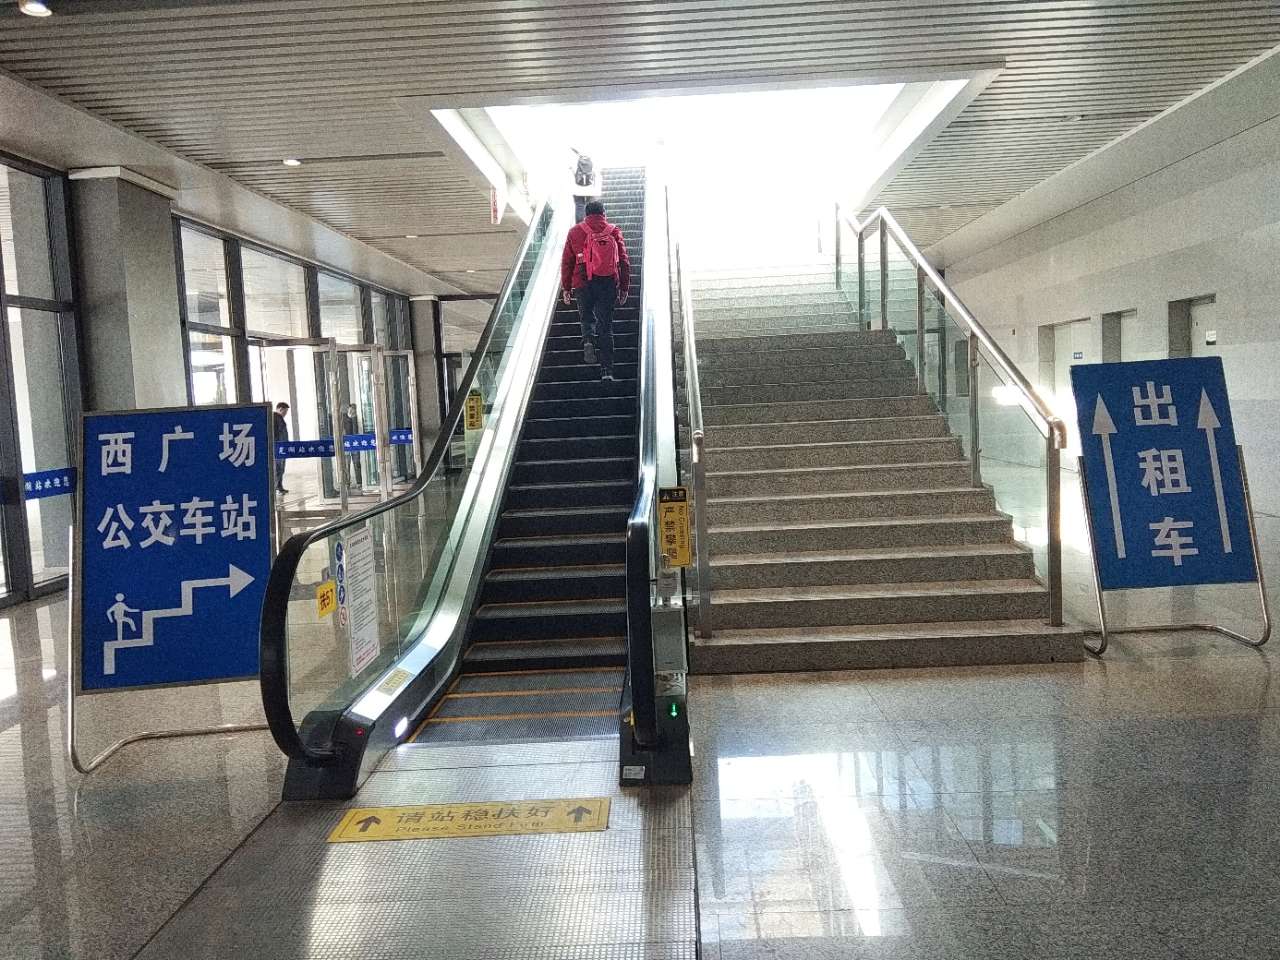 明天,芜湖火车站东西广场将正式互联互通,旅客出行更便捷